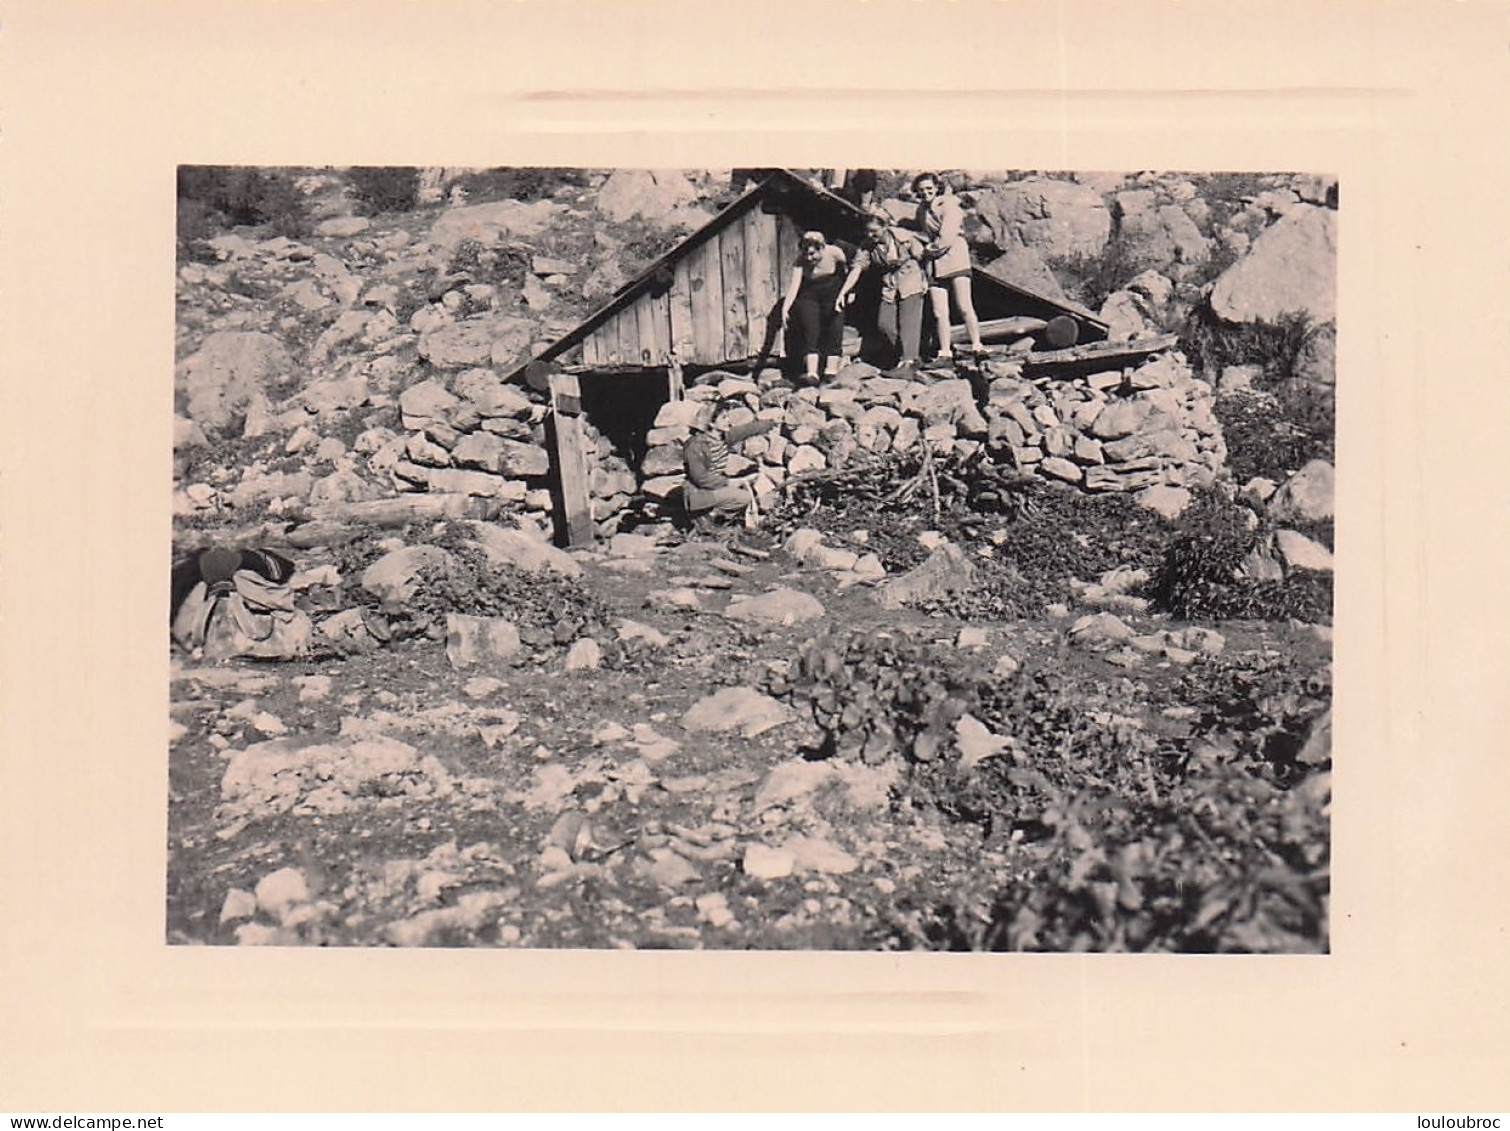 ALPES VACHERIE DE PIERRE STRECHE 1954  ALPINISME  PHOTO ORIGINALE  11 X 8 CM - Orte